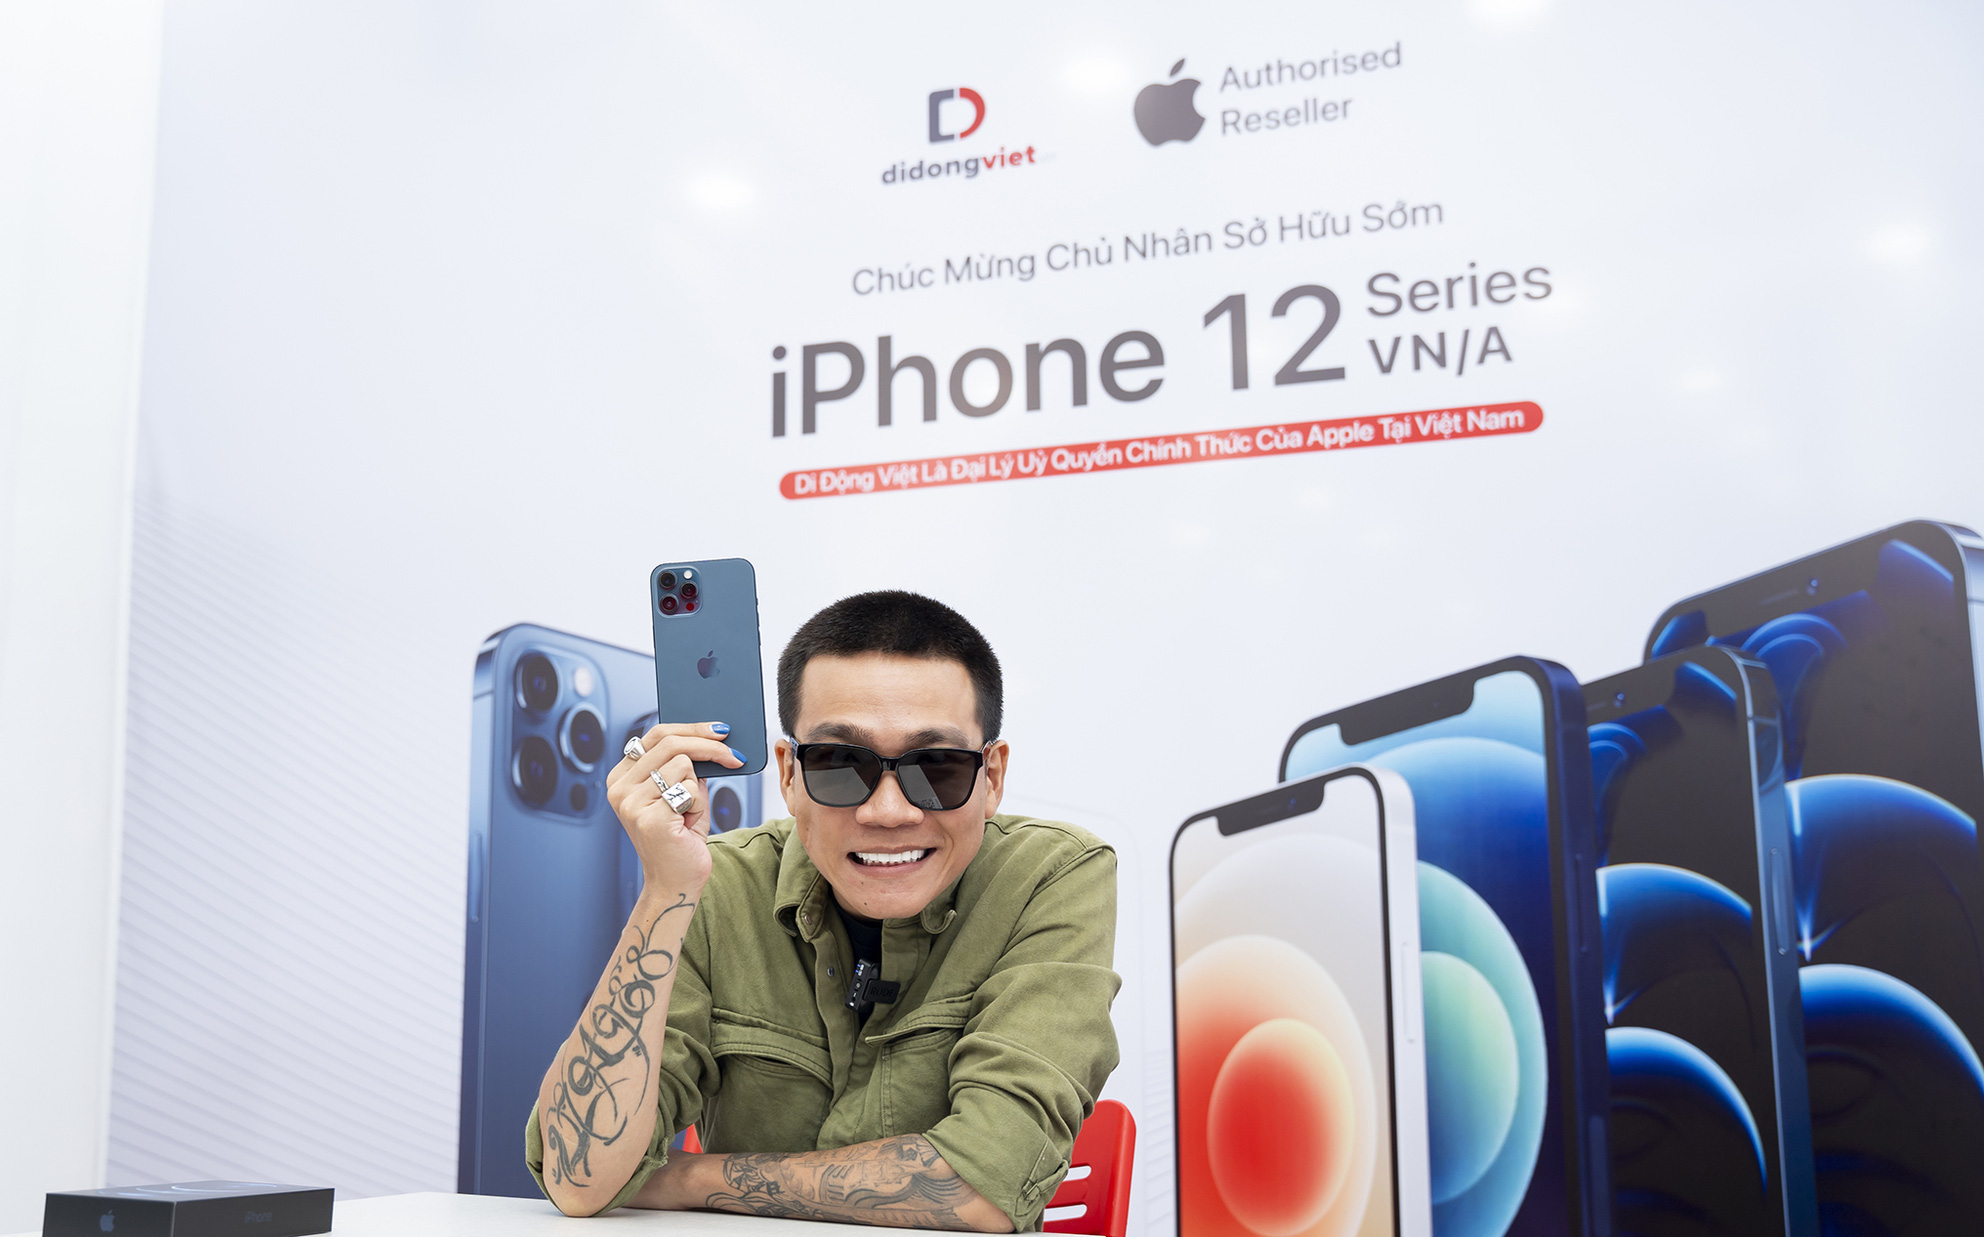 Wowy sở hữu iPhone 12 Pro Max VN/A ngay trong ngày mở bán đầu tiên tại Việt Nam